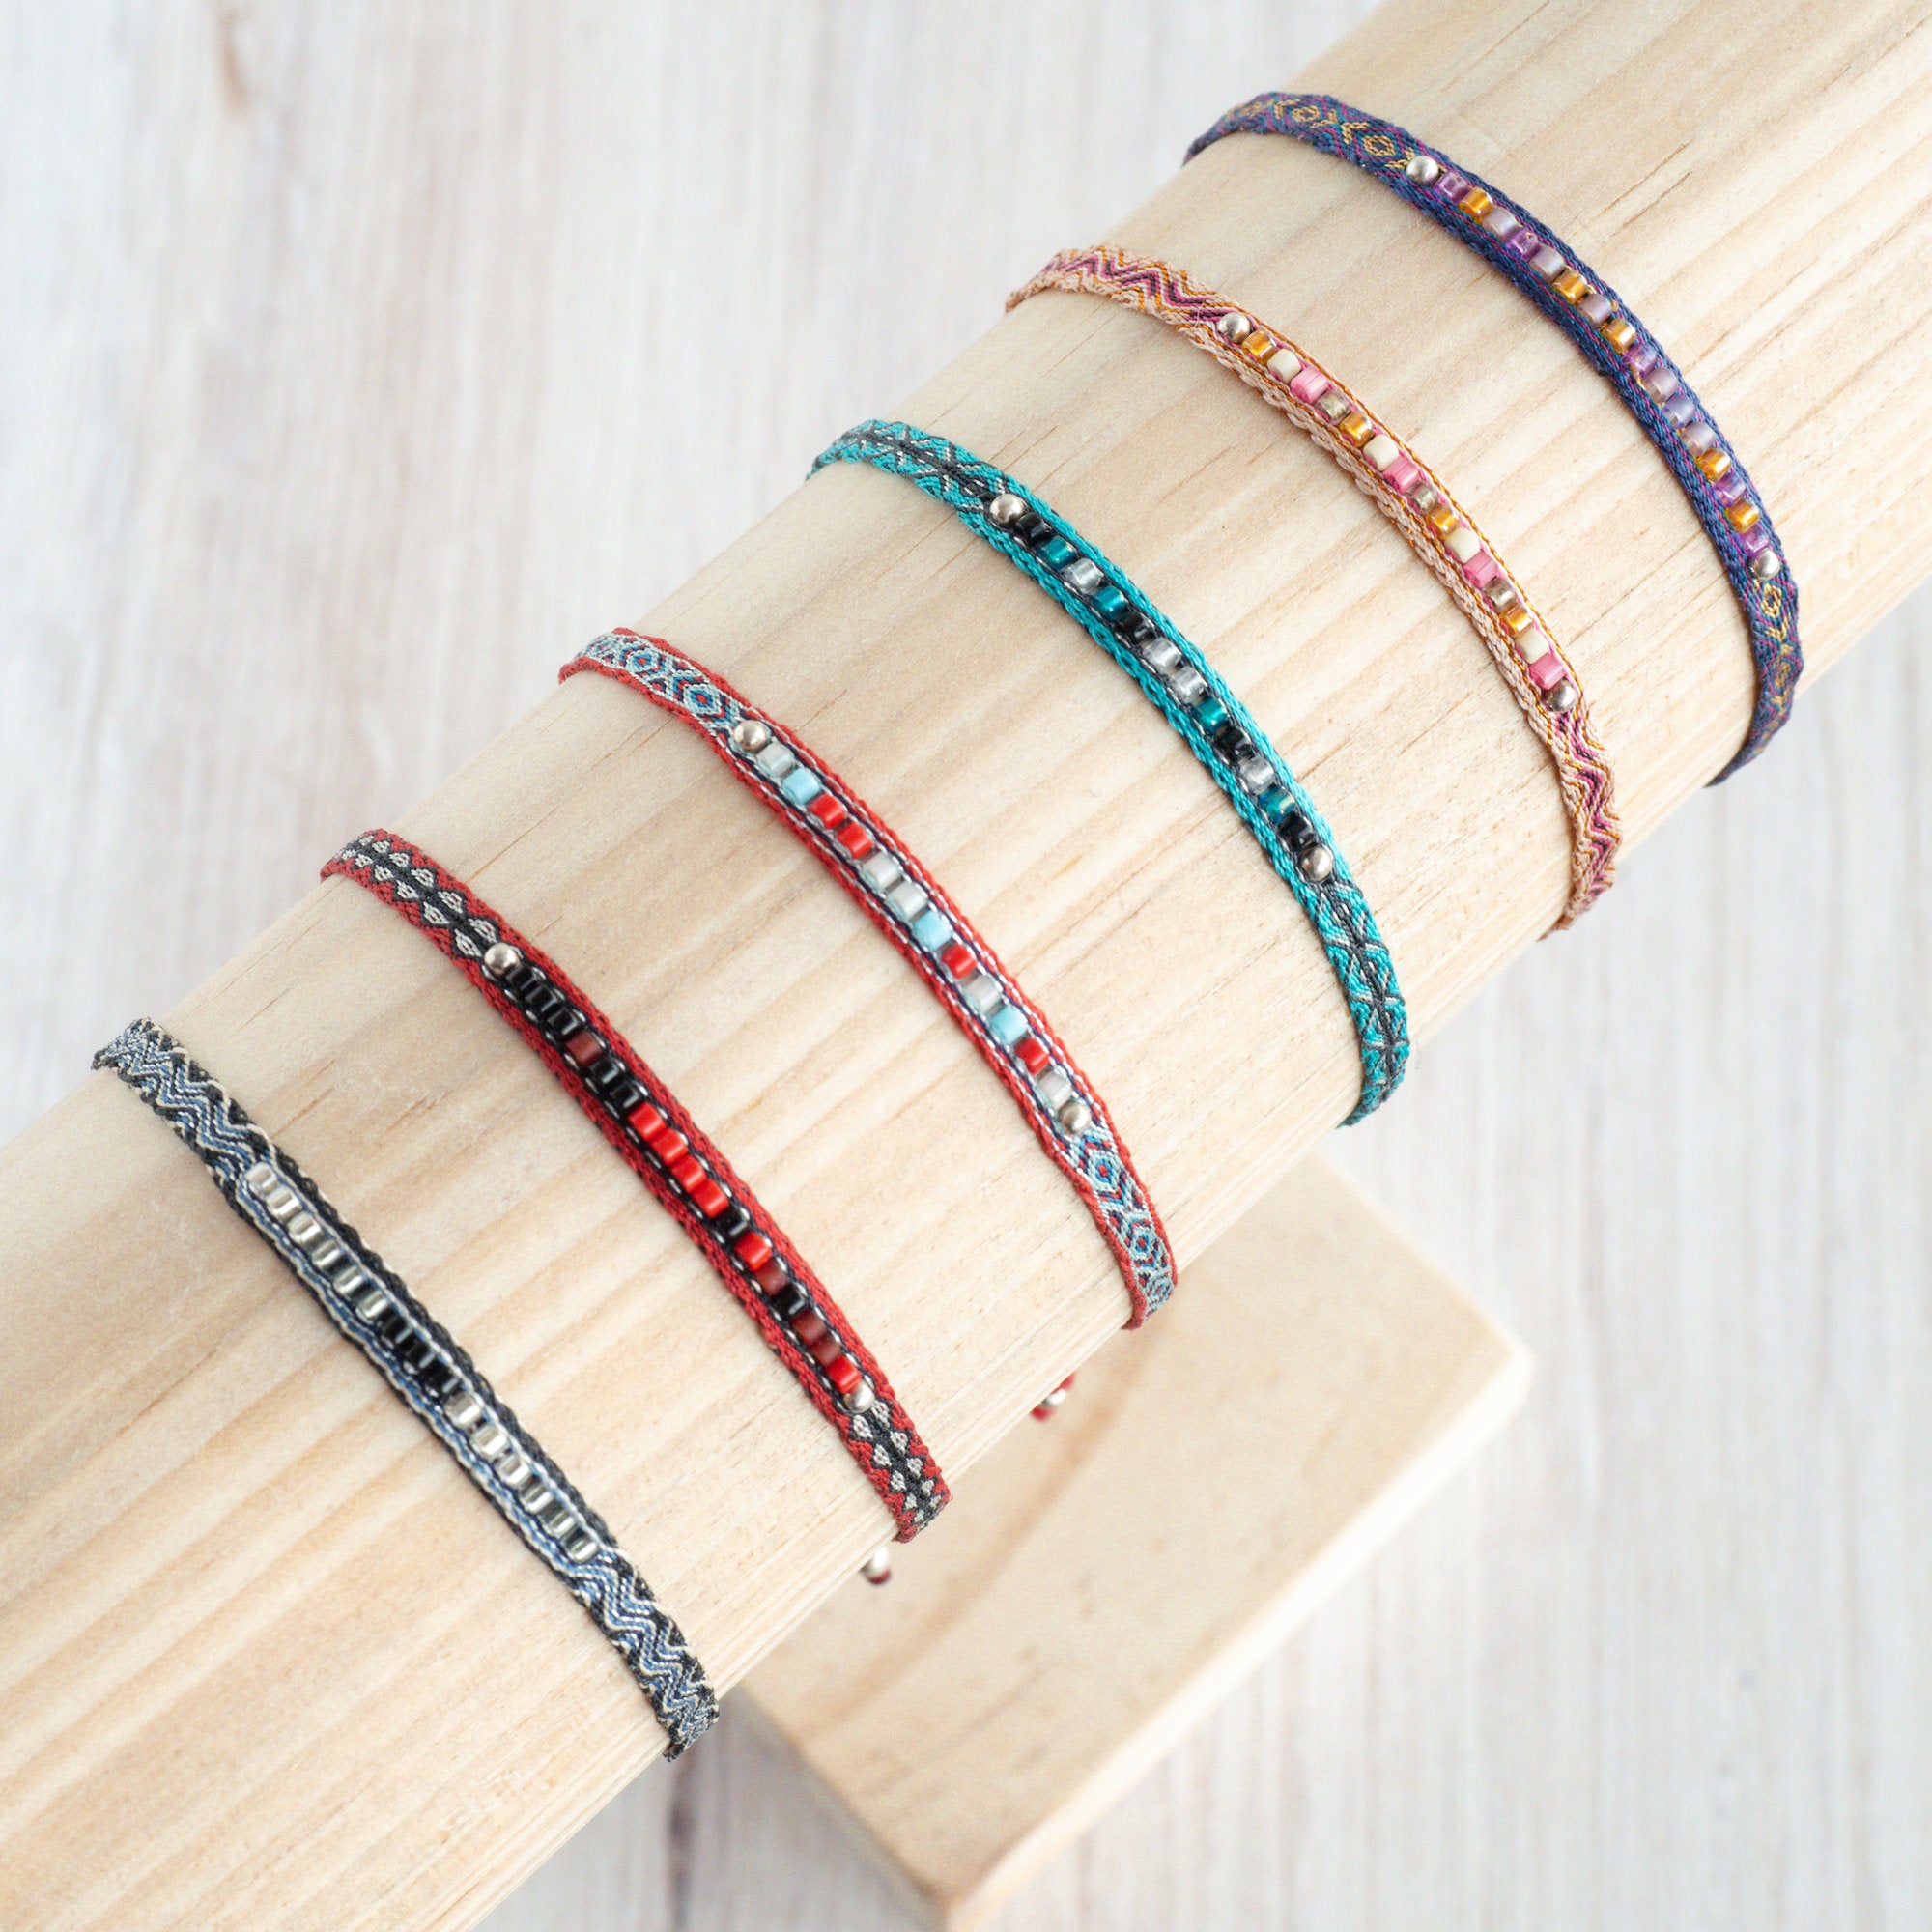 Egyptian Loom Woven Bracelet | Colombian Bracelet